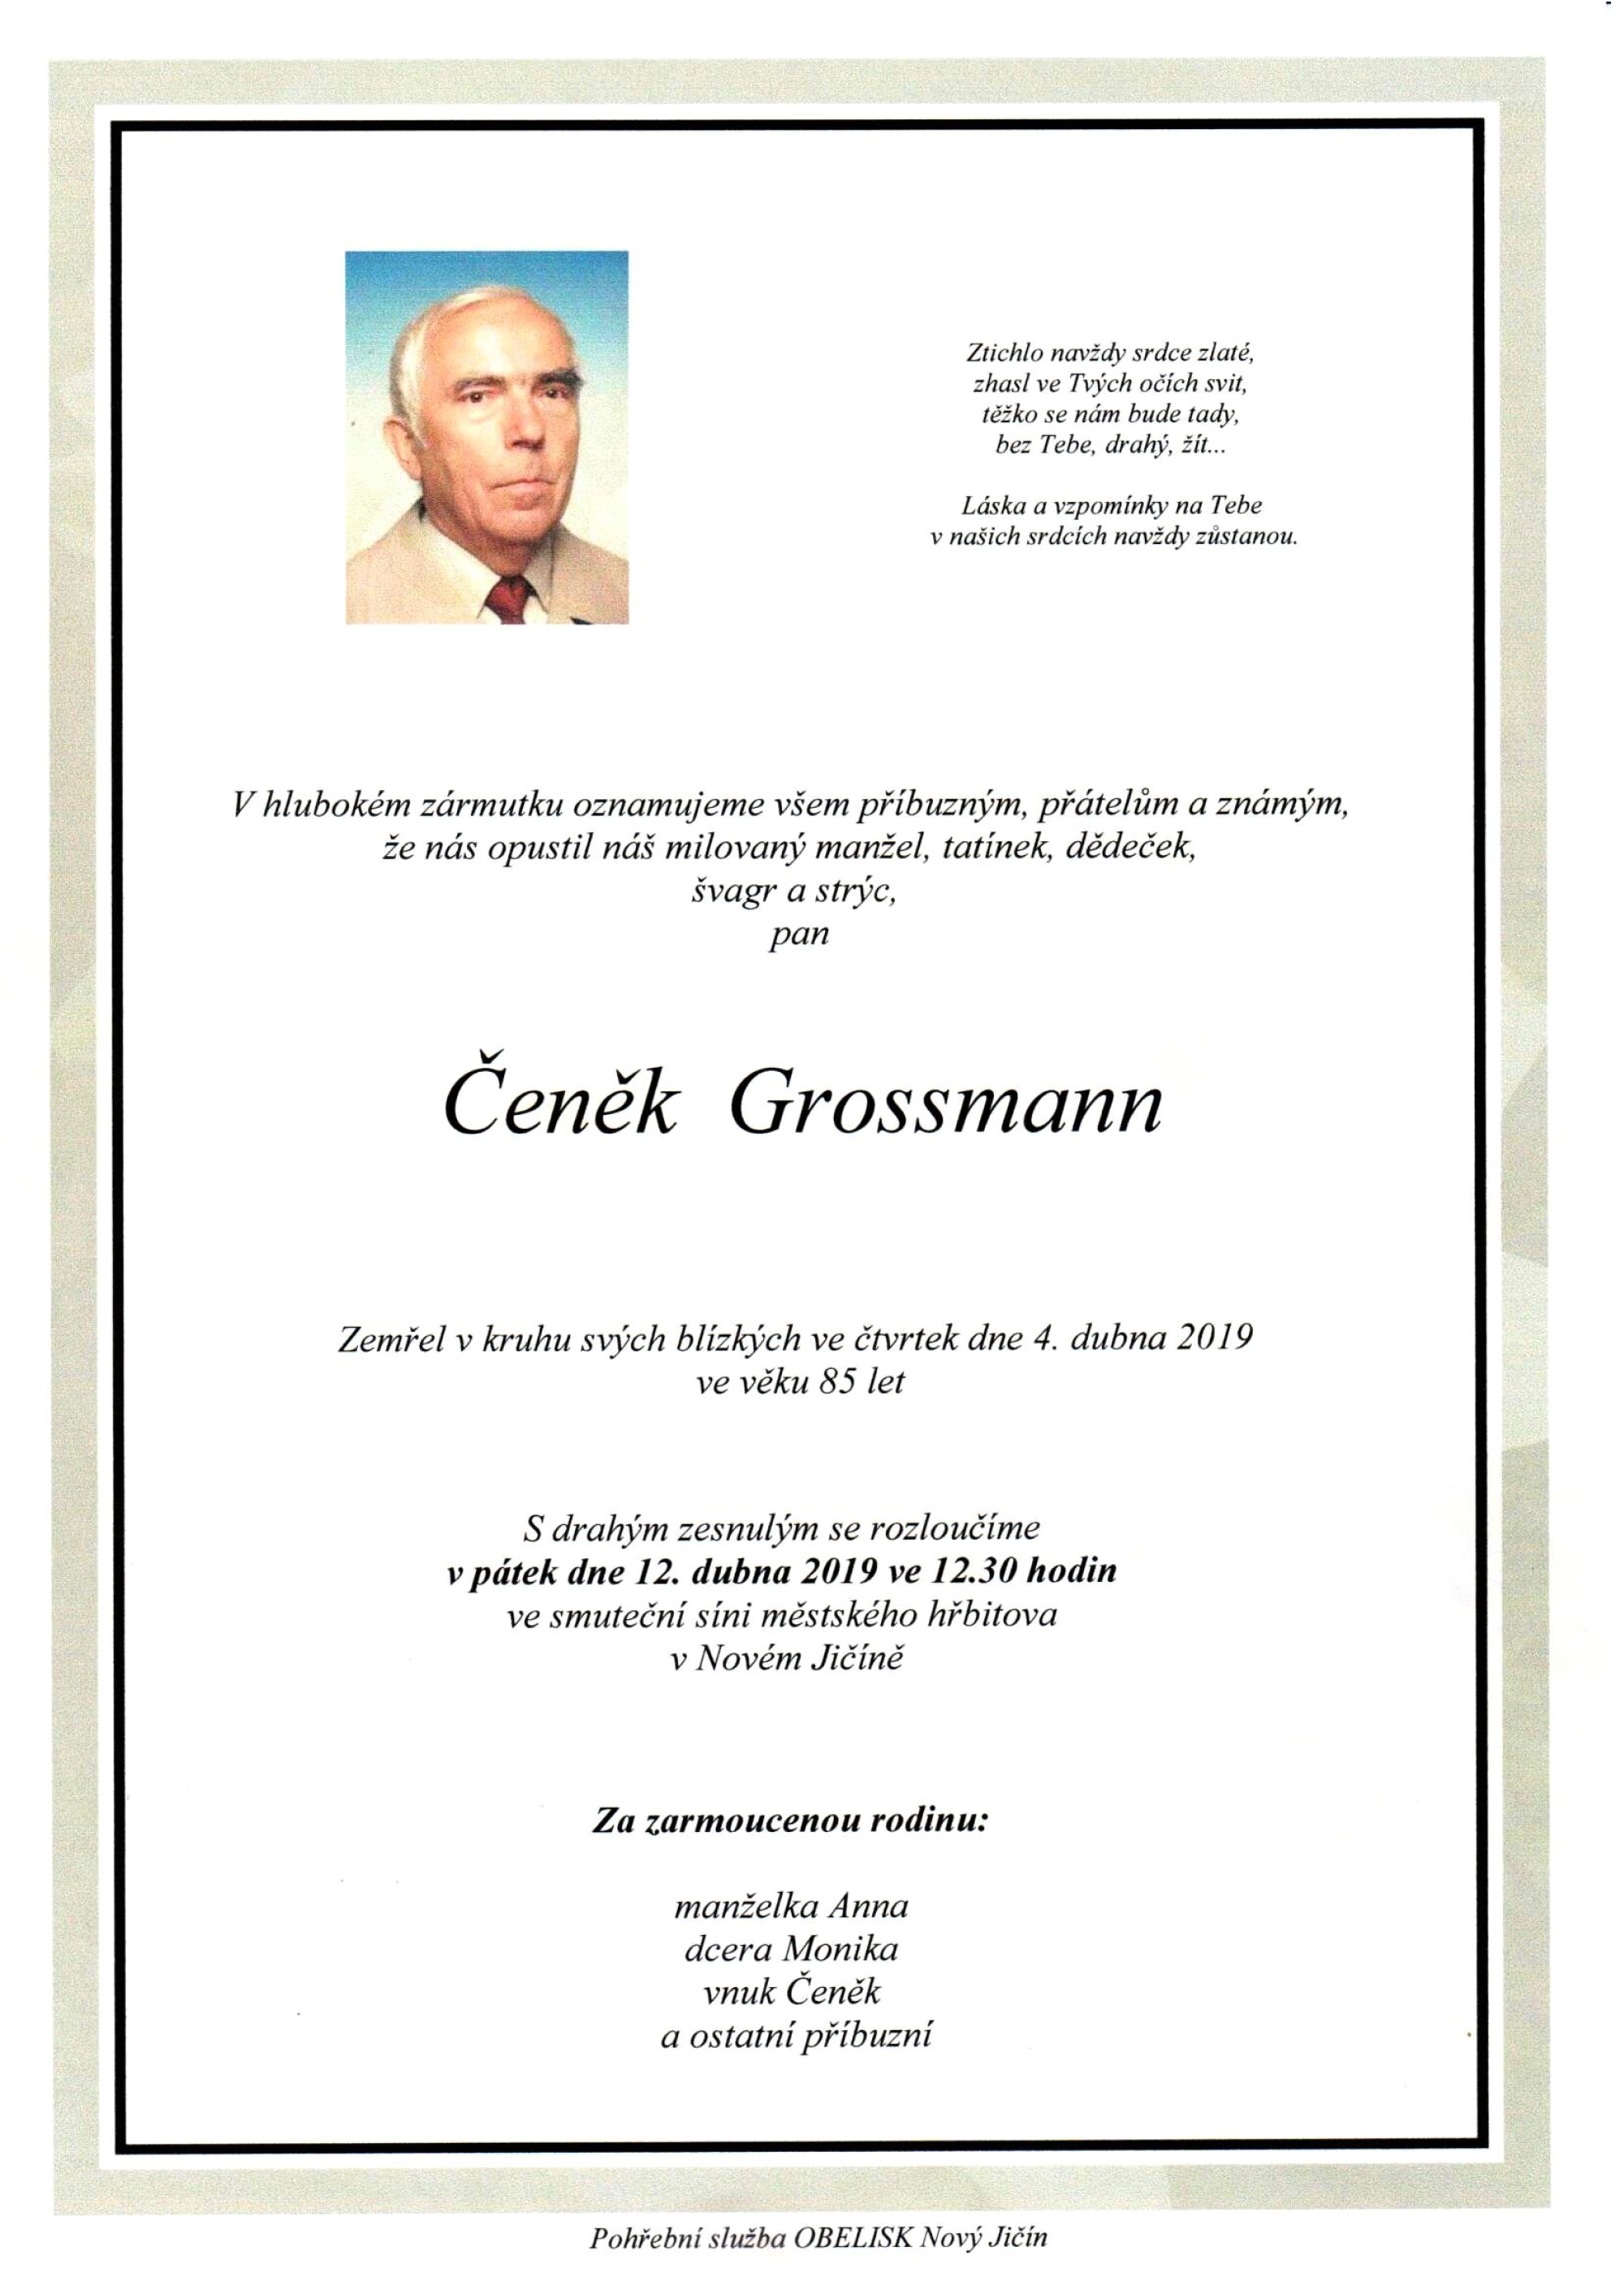 Čeněk Grossmann